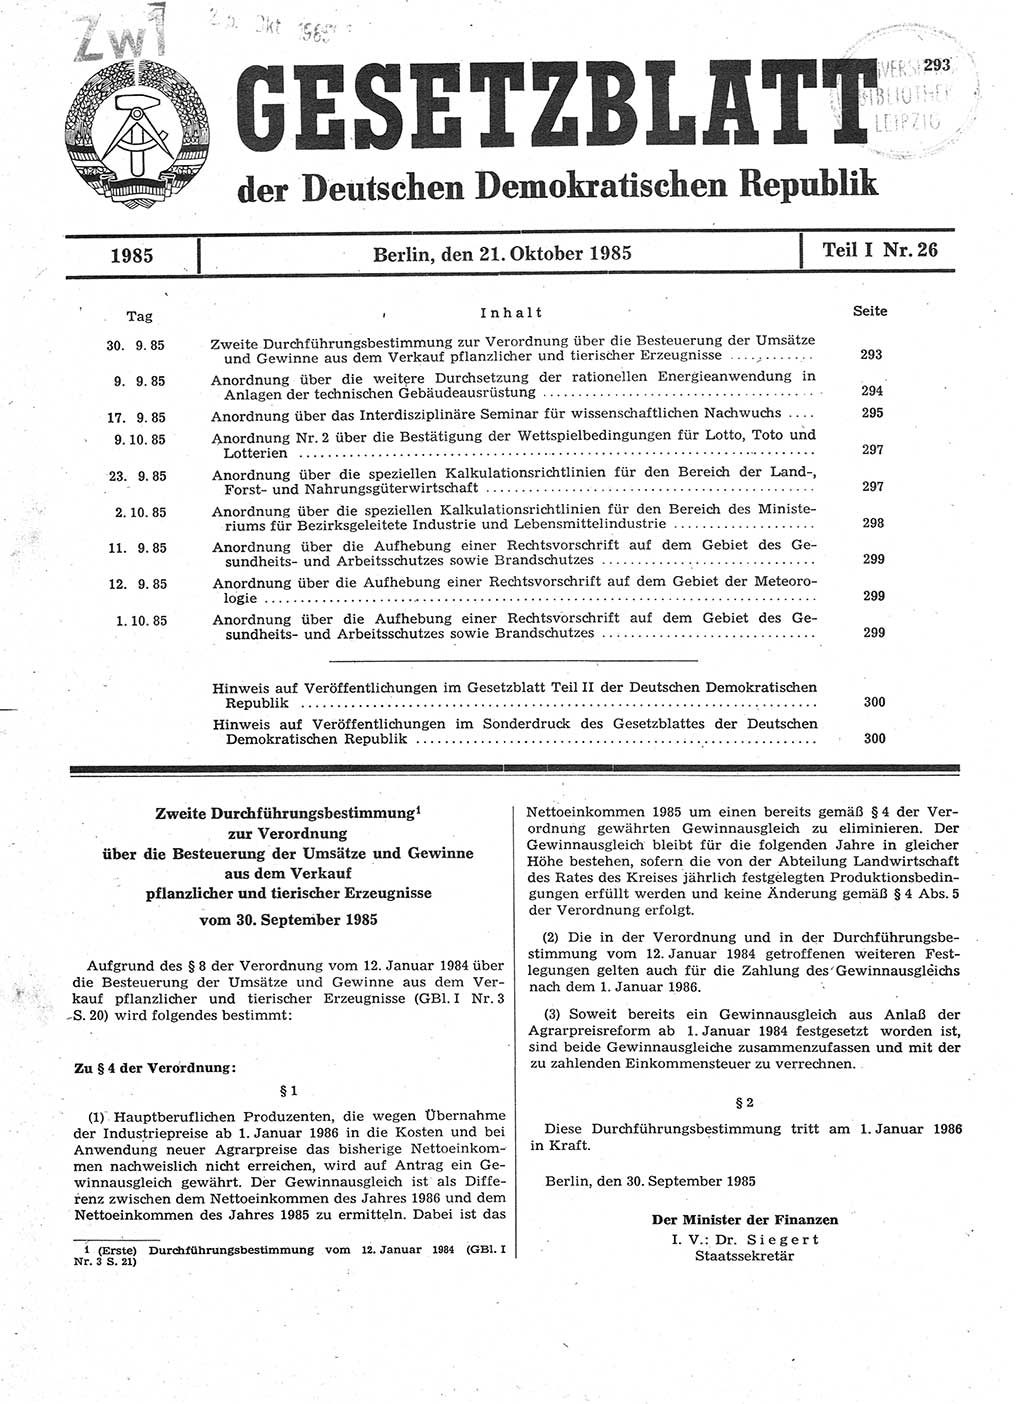 Gesetzblatt (GBl.) der Deutschen Demokratischen Republik (DDR) Teil Ⅰ 1985, Seite 293 (GBl. DDR Ⅰ 1985, S. 293)